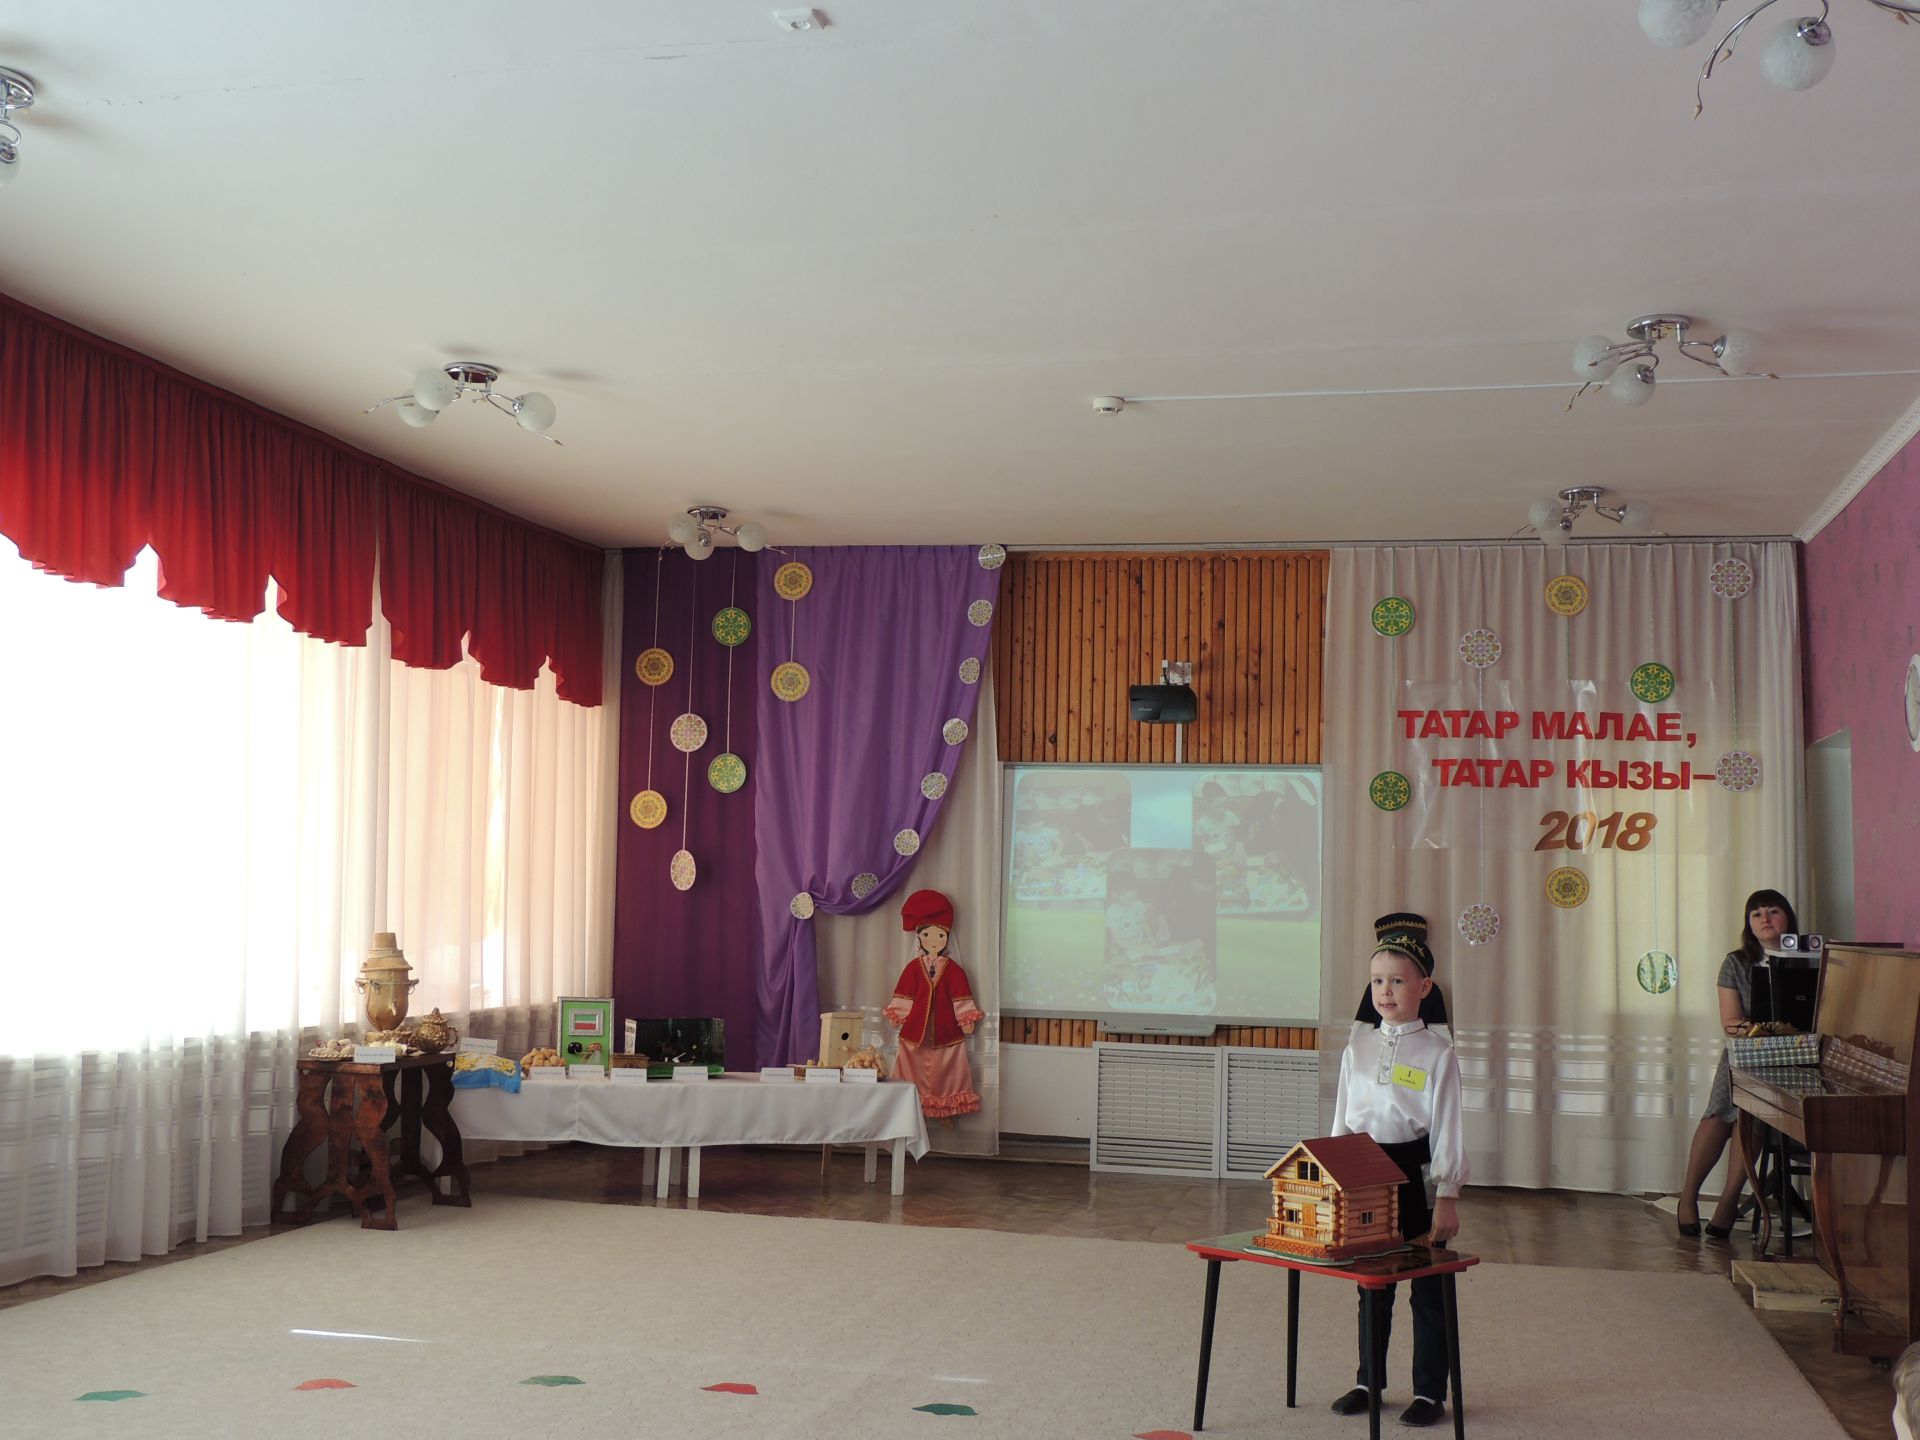 В Джалиле прошел муниципальный конкурс «Татар малае, татар кызы -2018» среди воспитанников детских садов.